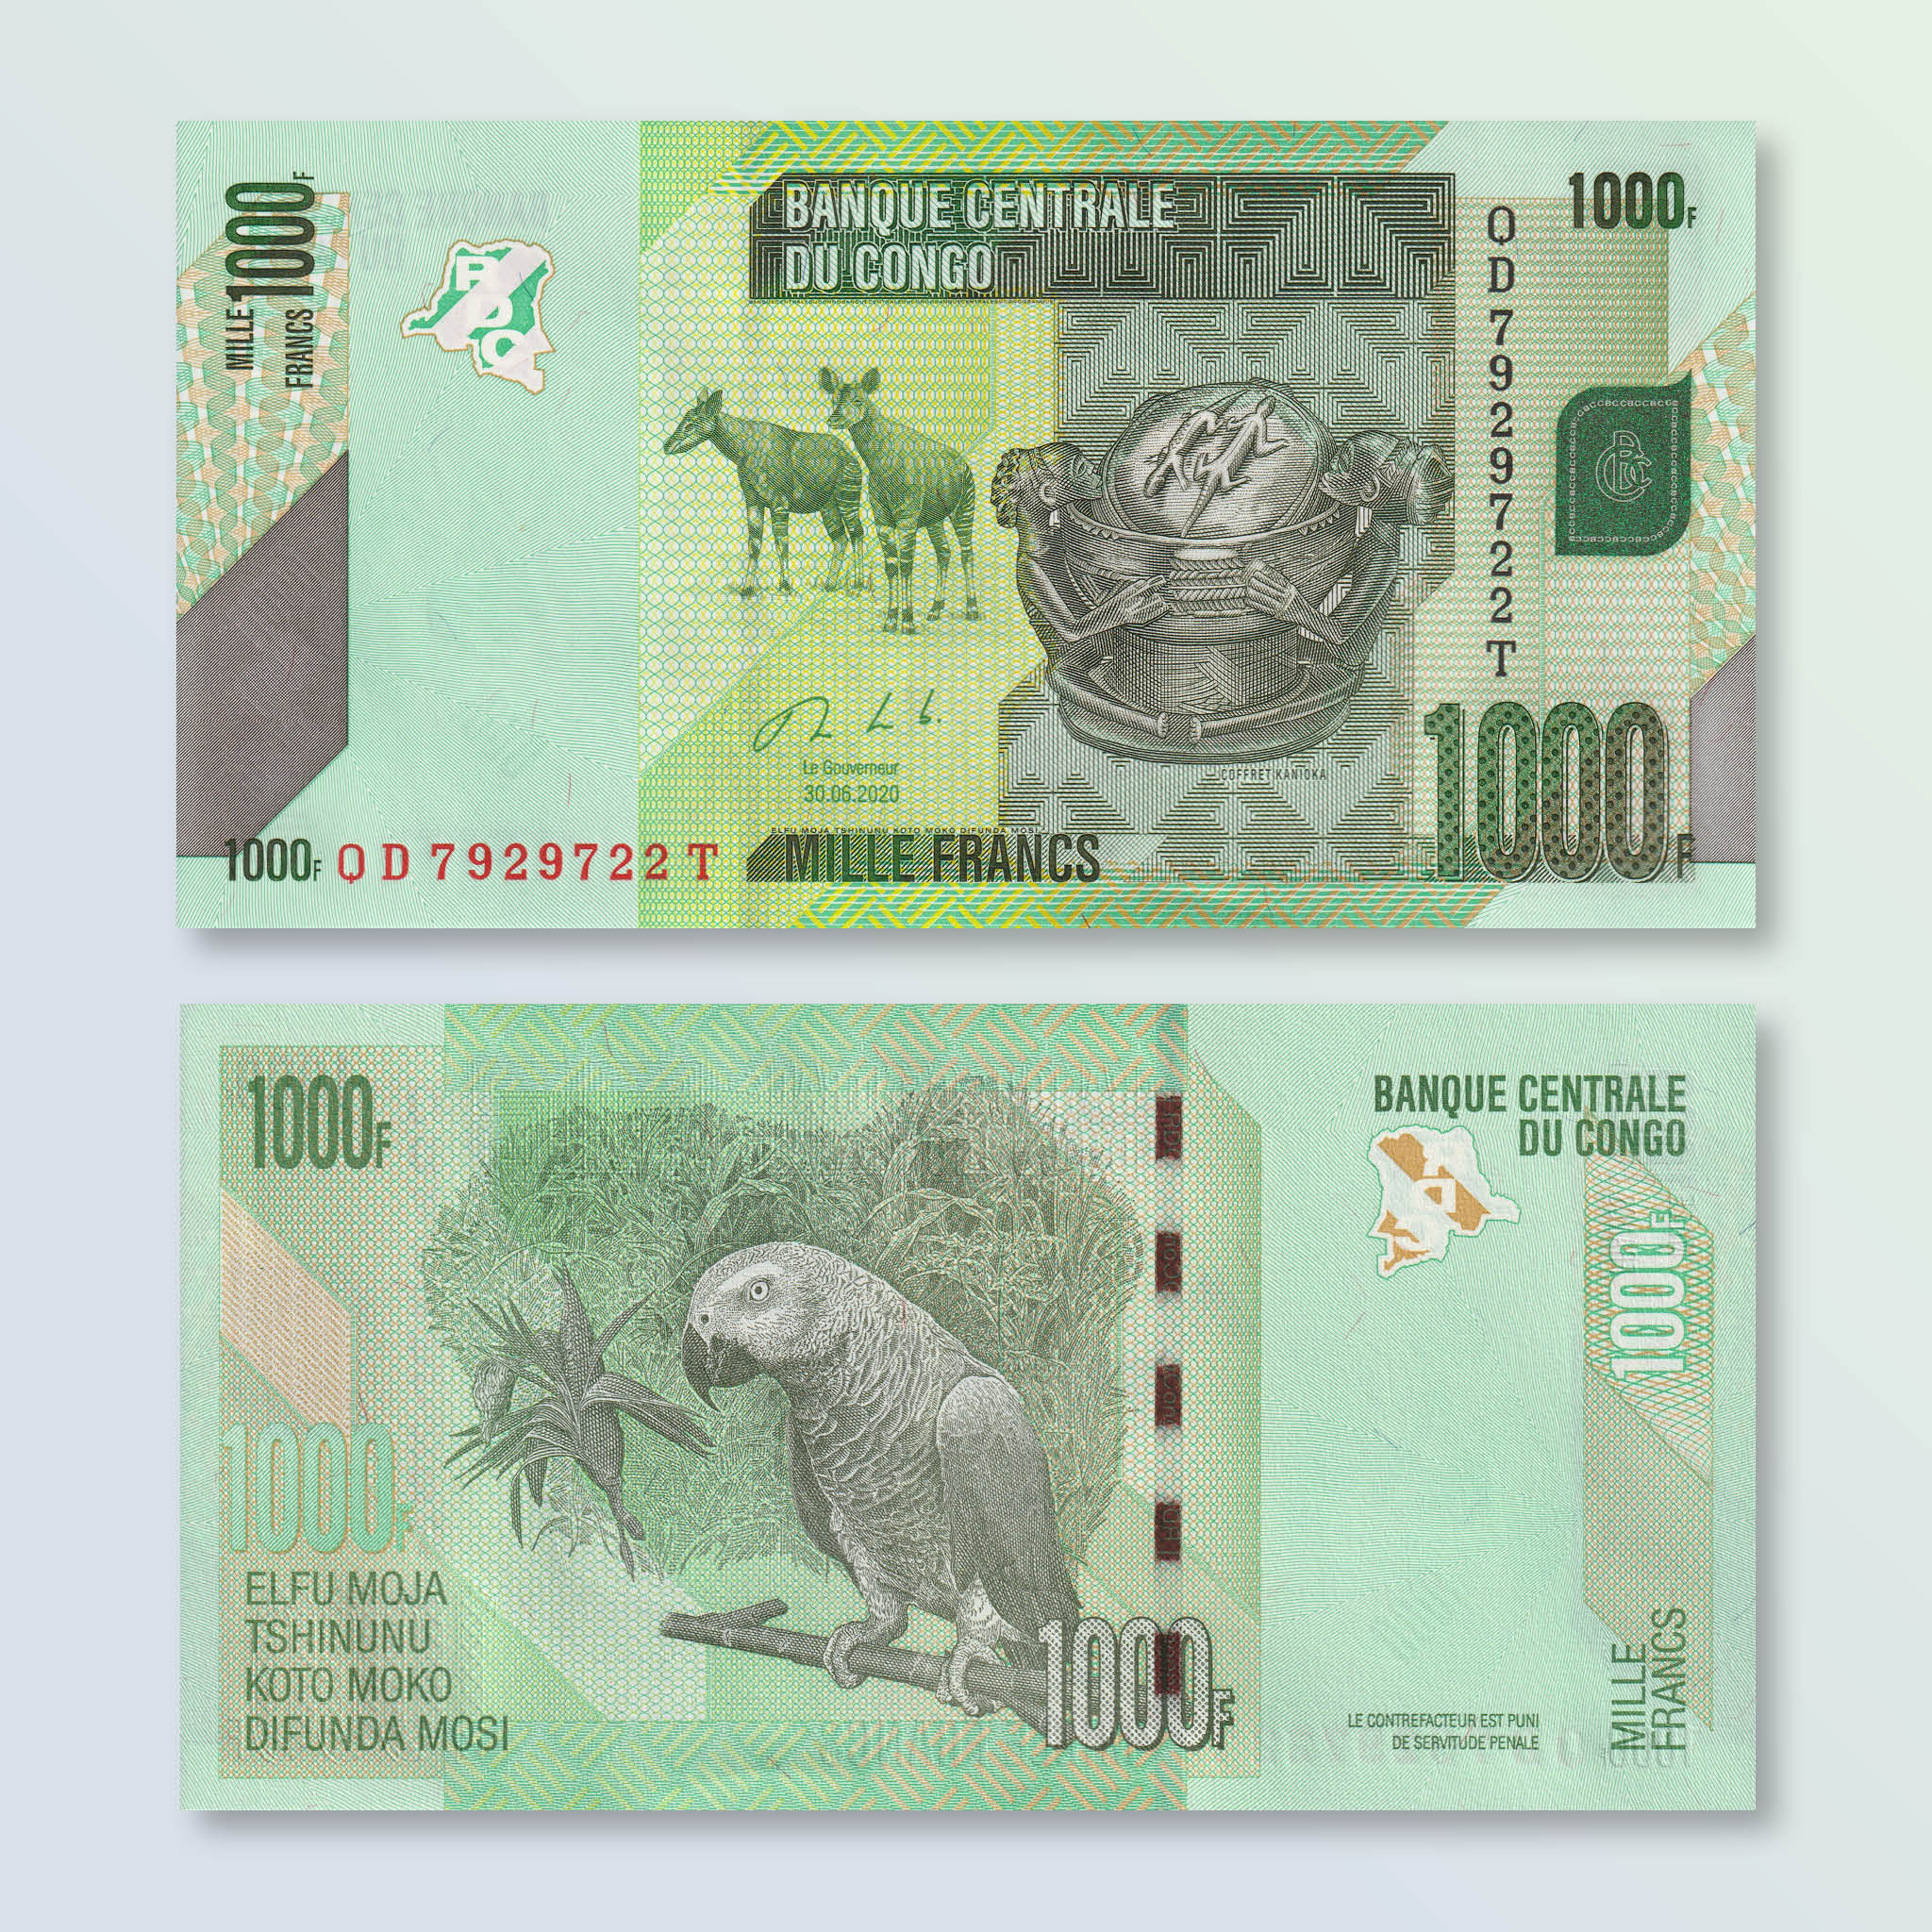 Congo Democratic Republic 1000 Francs, 2020, B323c, P101, UNC - Robert's World Money - World Banknotes